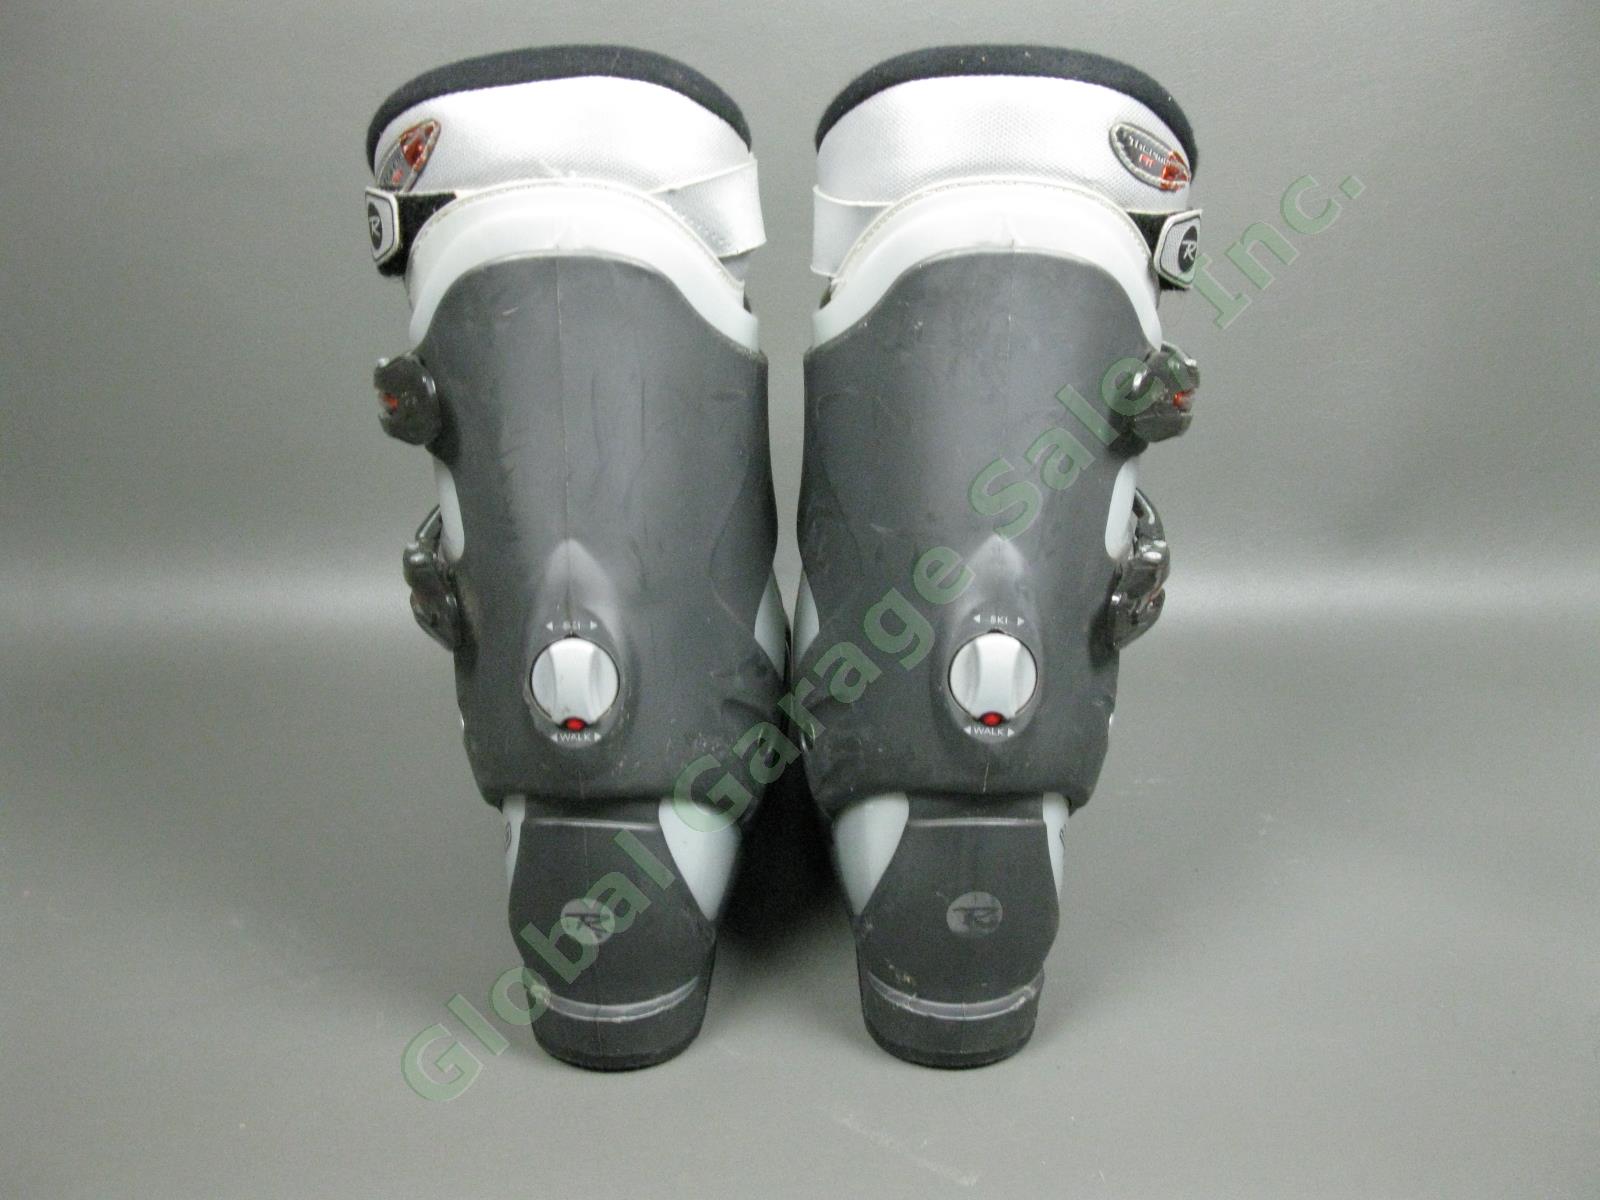 Rossignol Salto X Cockpit Orange/Silver Ski Boots Size 30.5 EUR/13 US/12 UK NR! 10